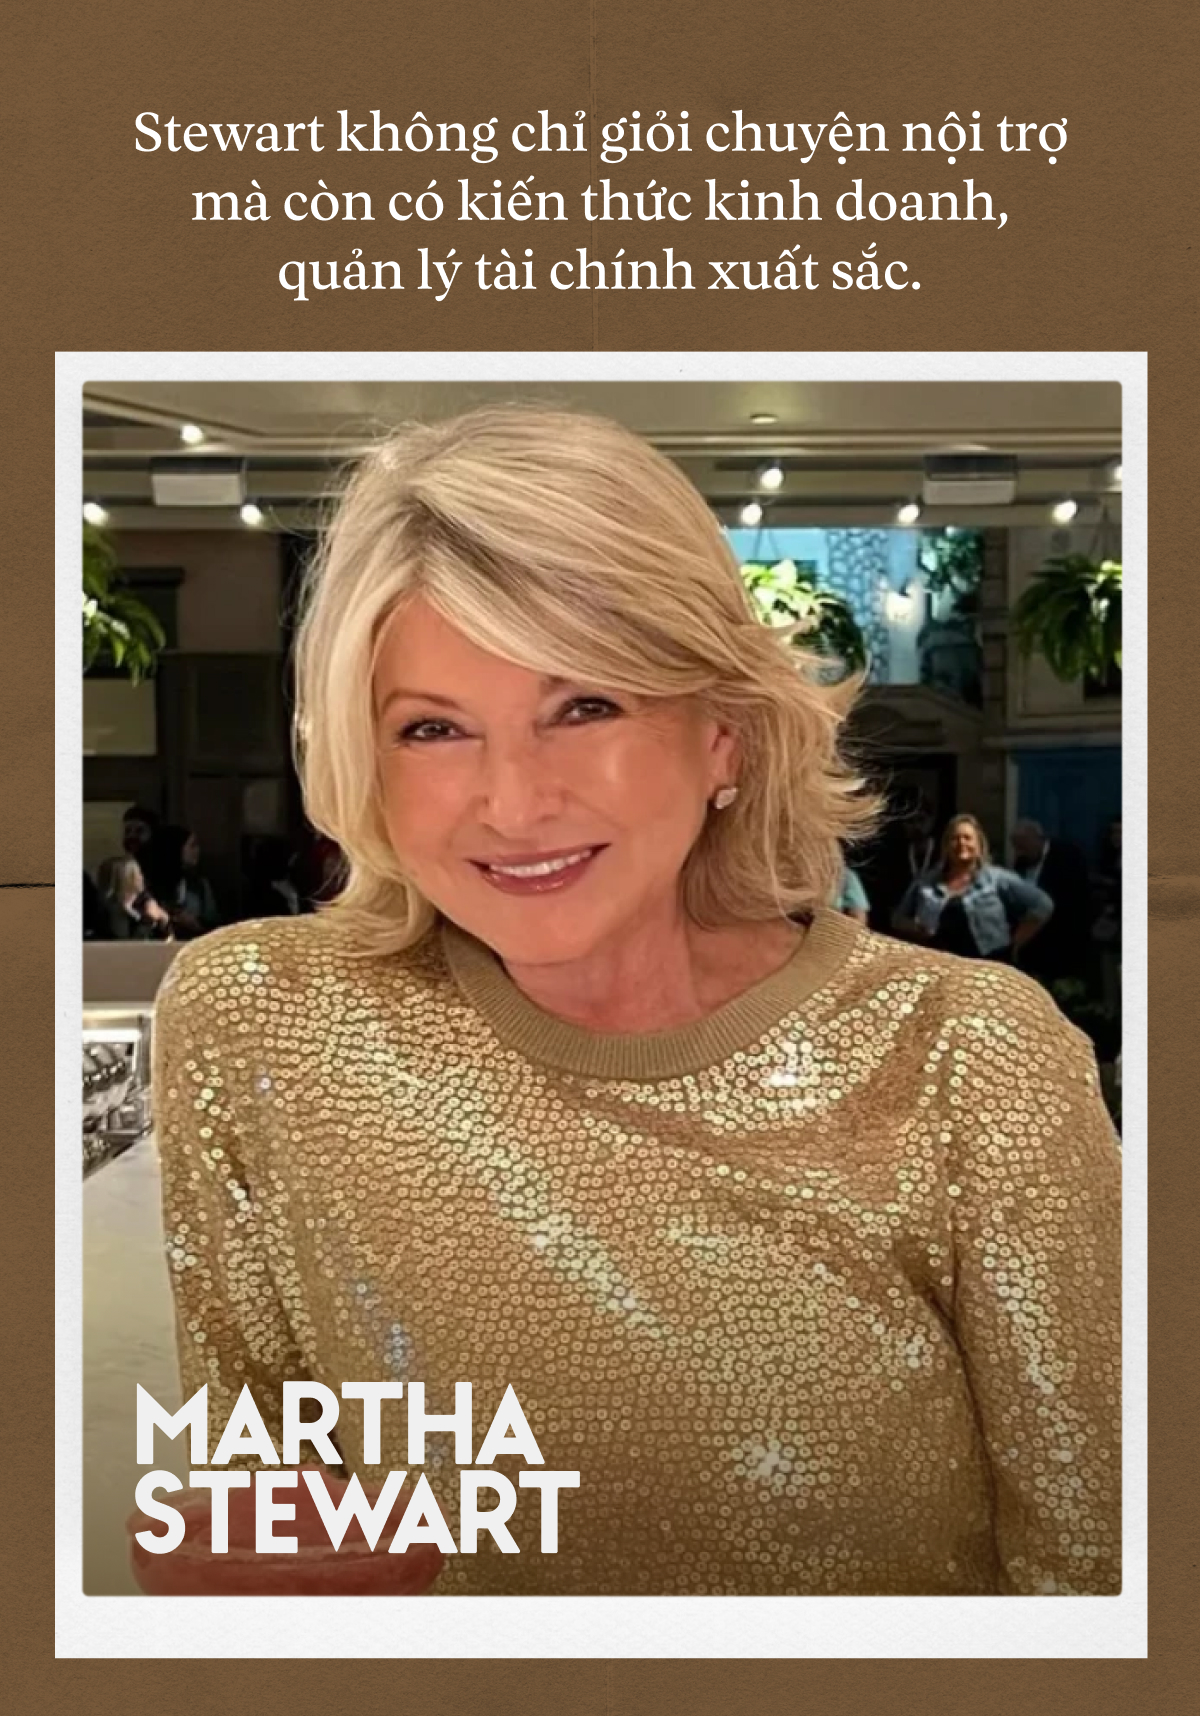 Martha Stewart: “Nữ hoàng kinh doanh” toàn tài của nước Mỹ, đập tan định kiến tuổi tác với bộ ảnh áo tắm ở tuổi 81 - Ảnh 3.